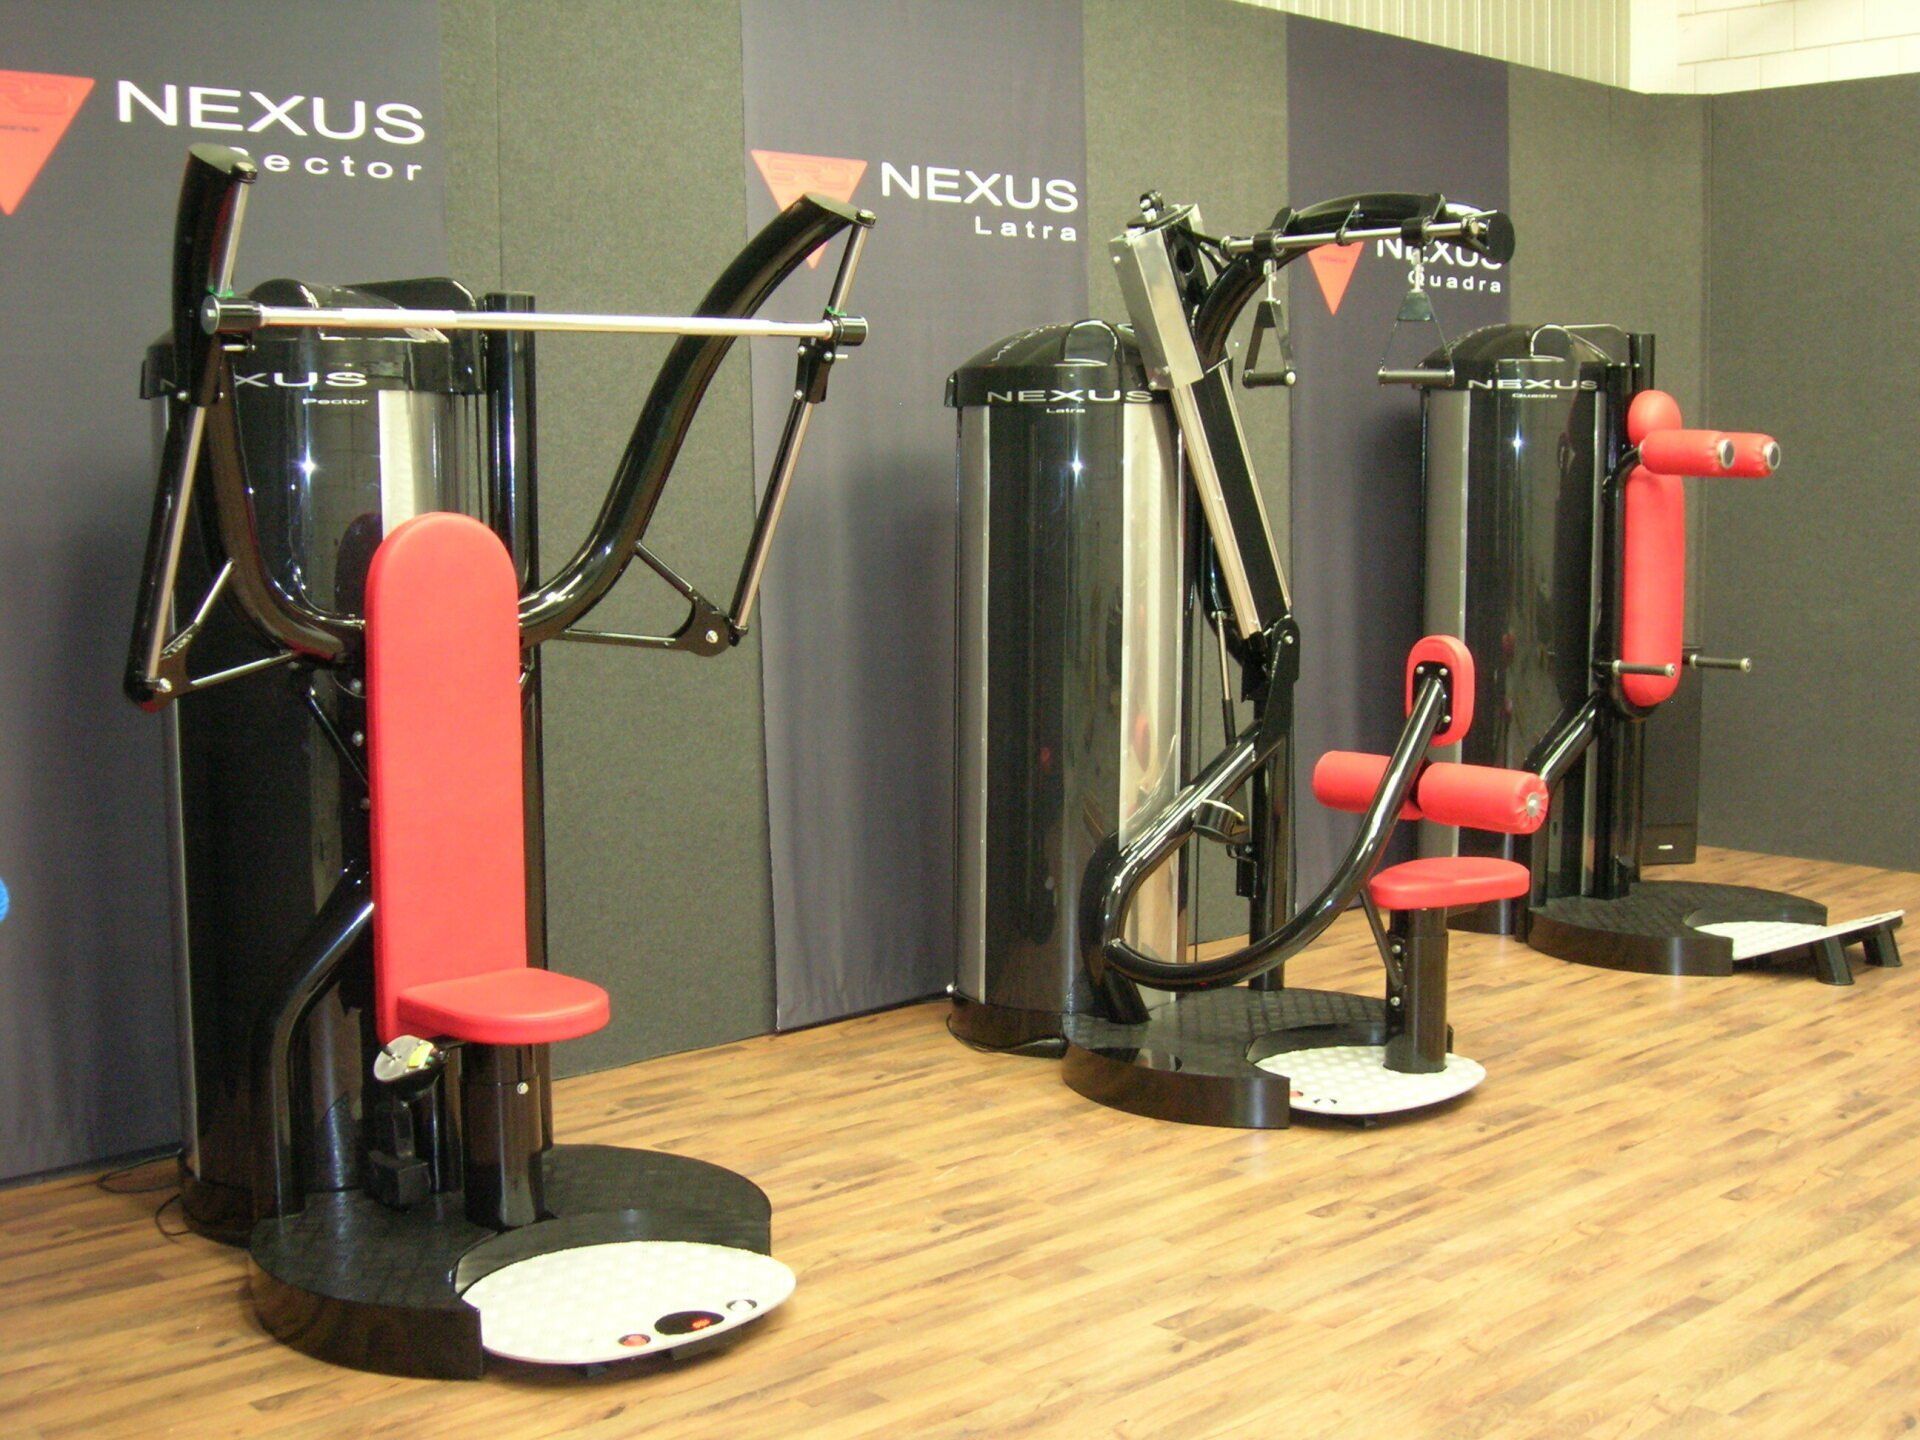 NEXUS fitness prototypes